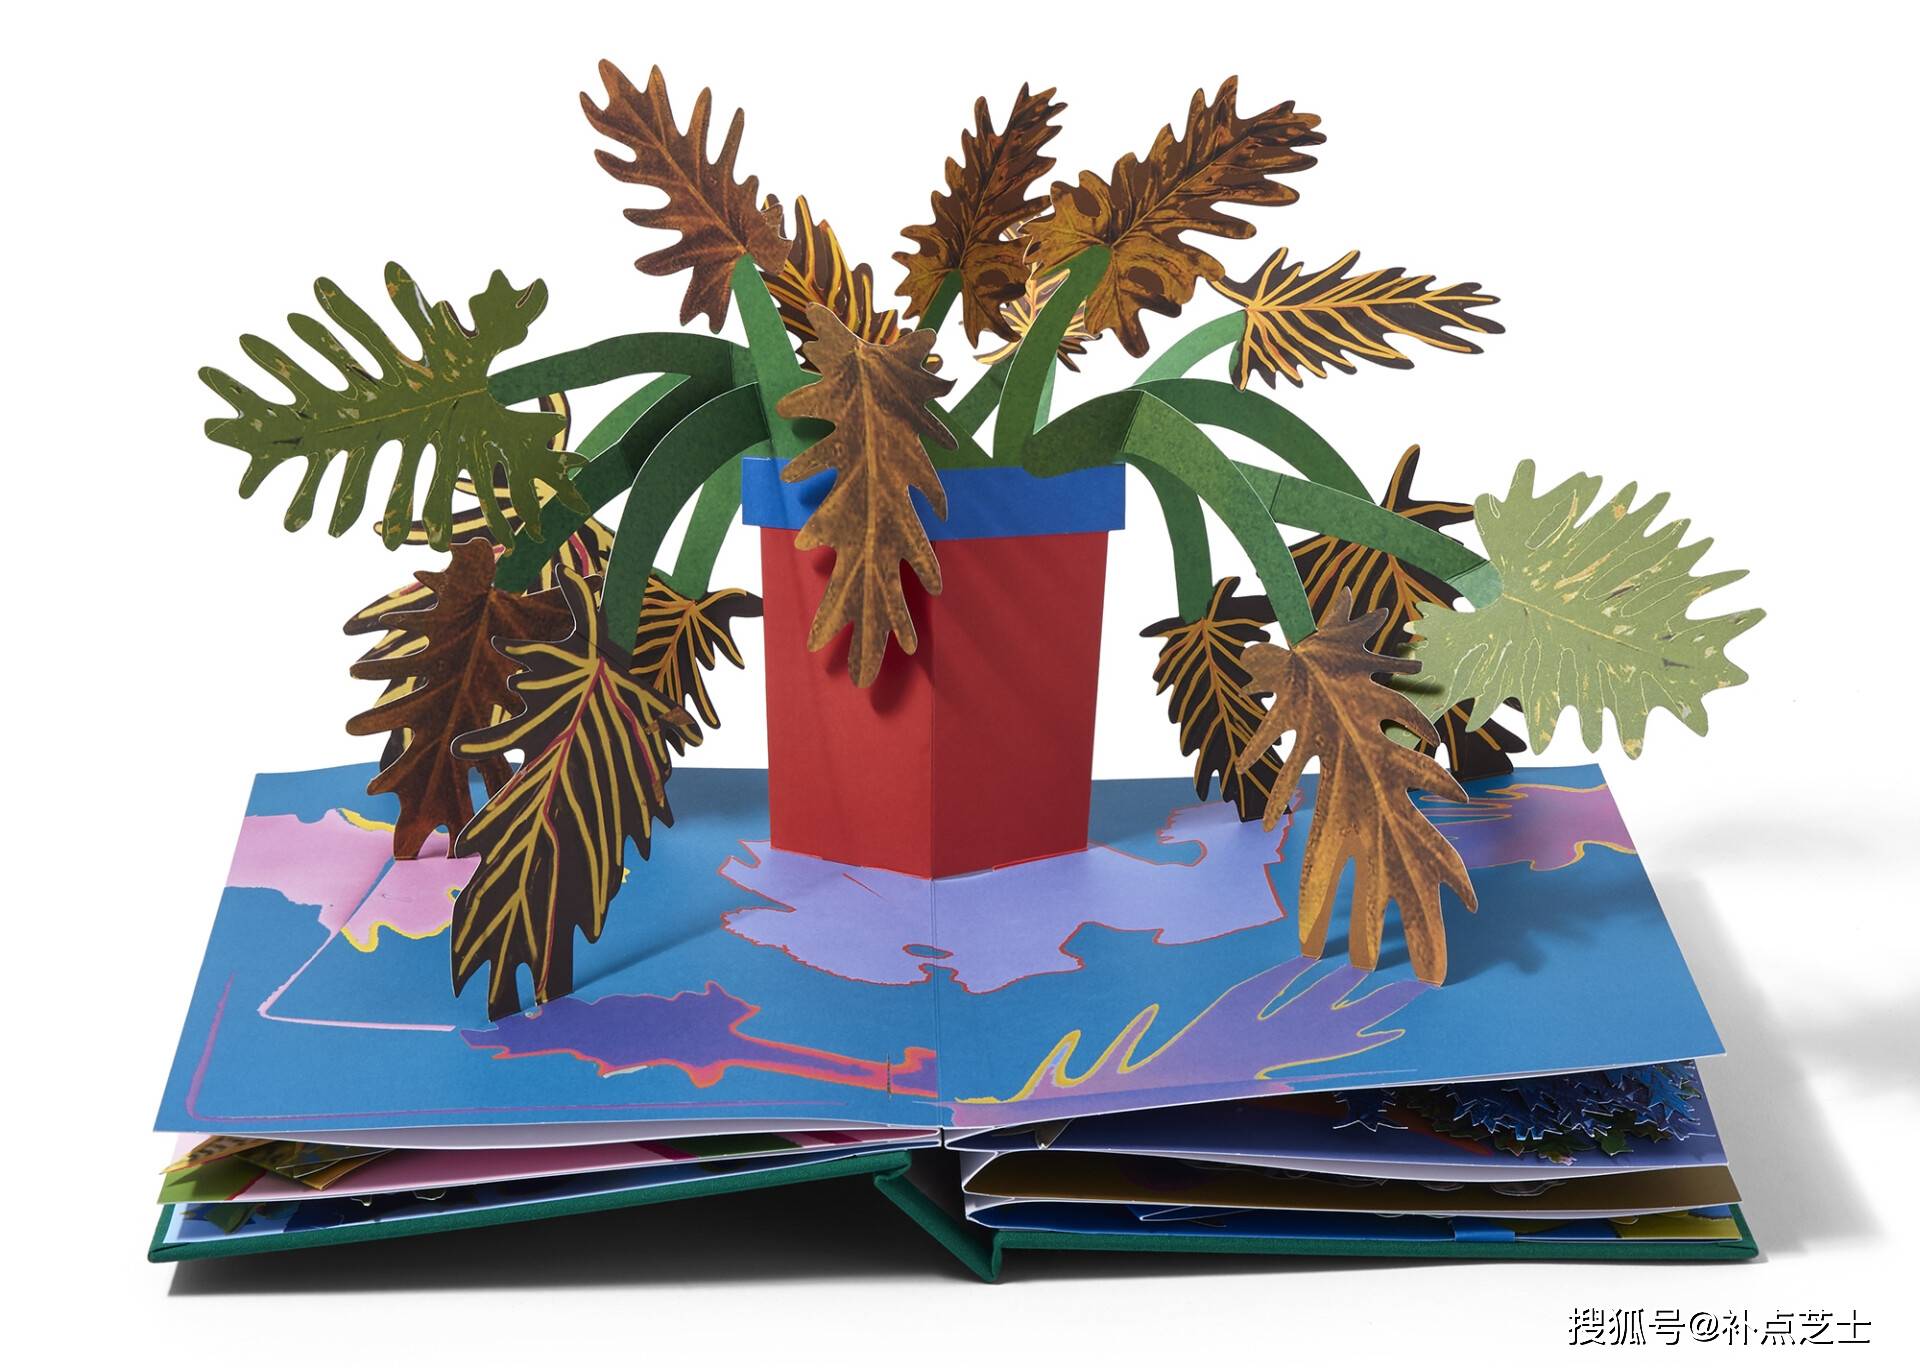 将植物收入书中,艺术家通过立体书把互联网内容带入现实